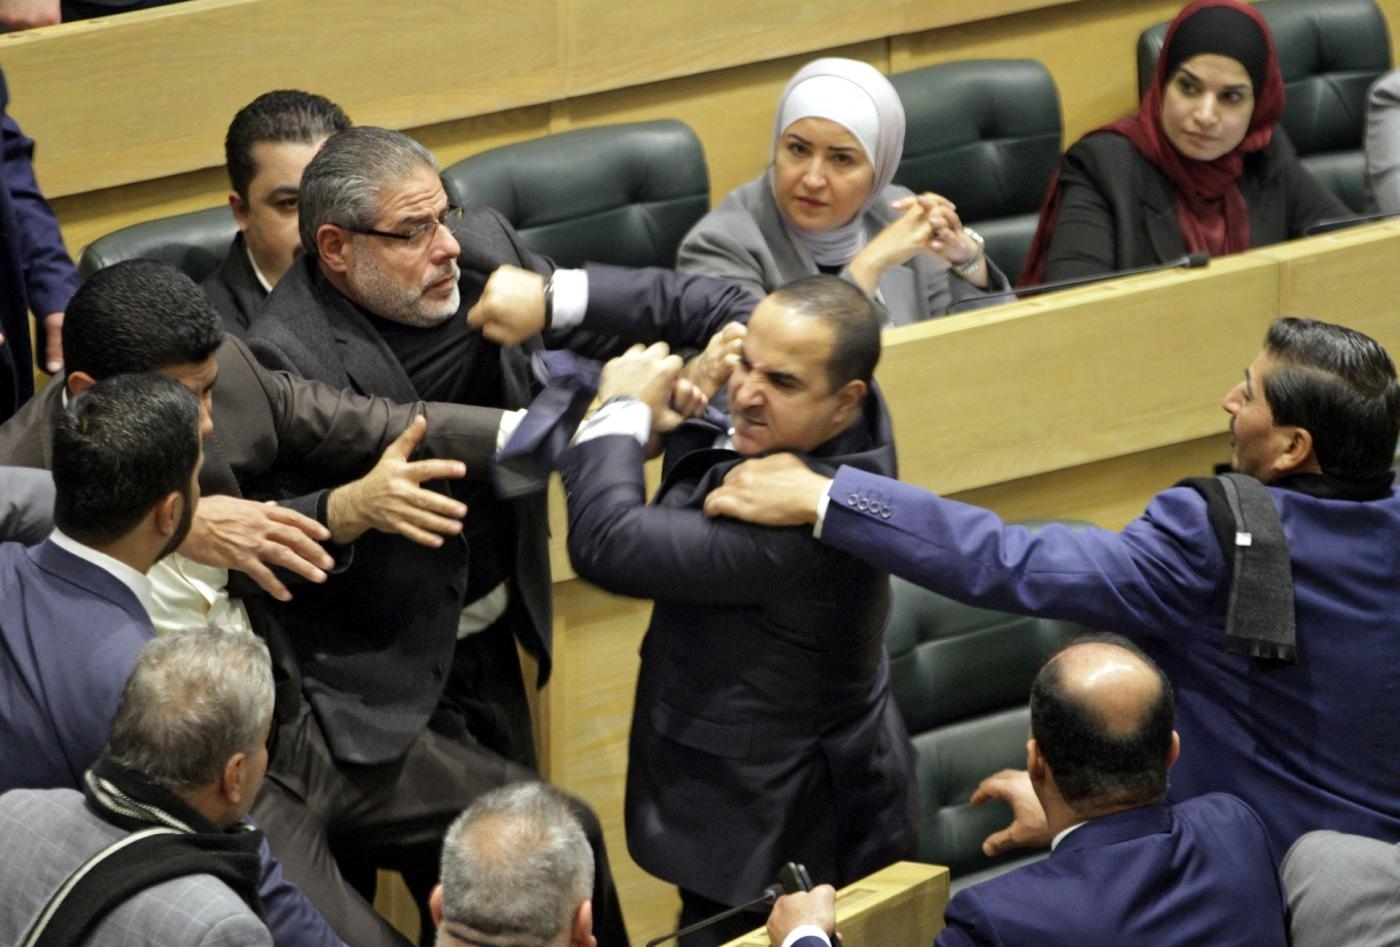 Des députés jordaniens sont séparés pendant une altercation au Parlement dans la capitale, Amman, le 28 décembre (AFP)